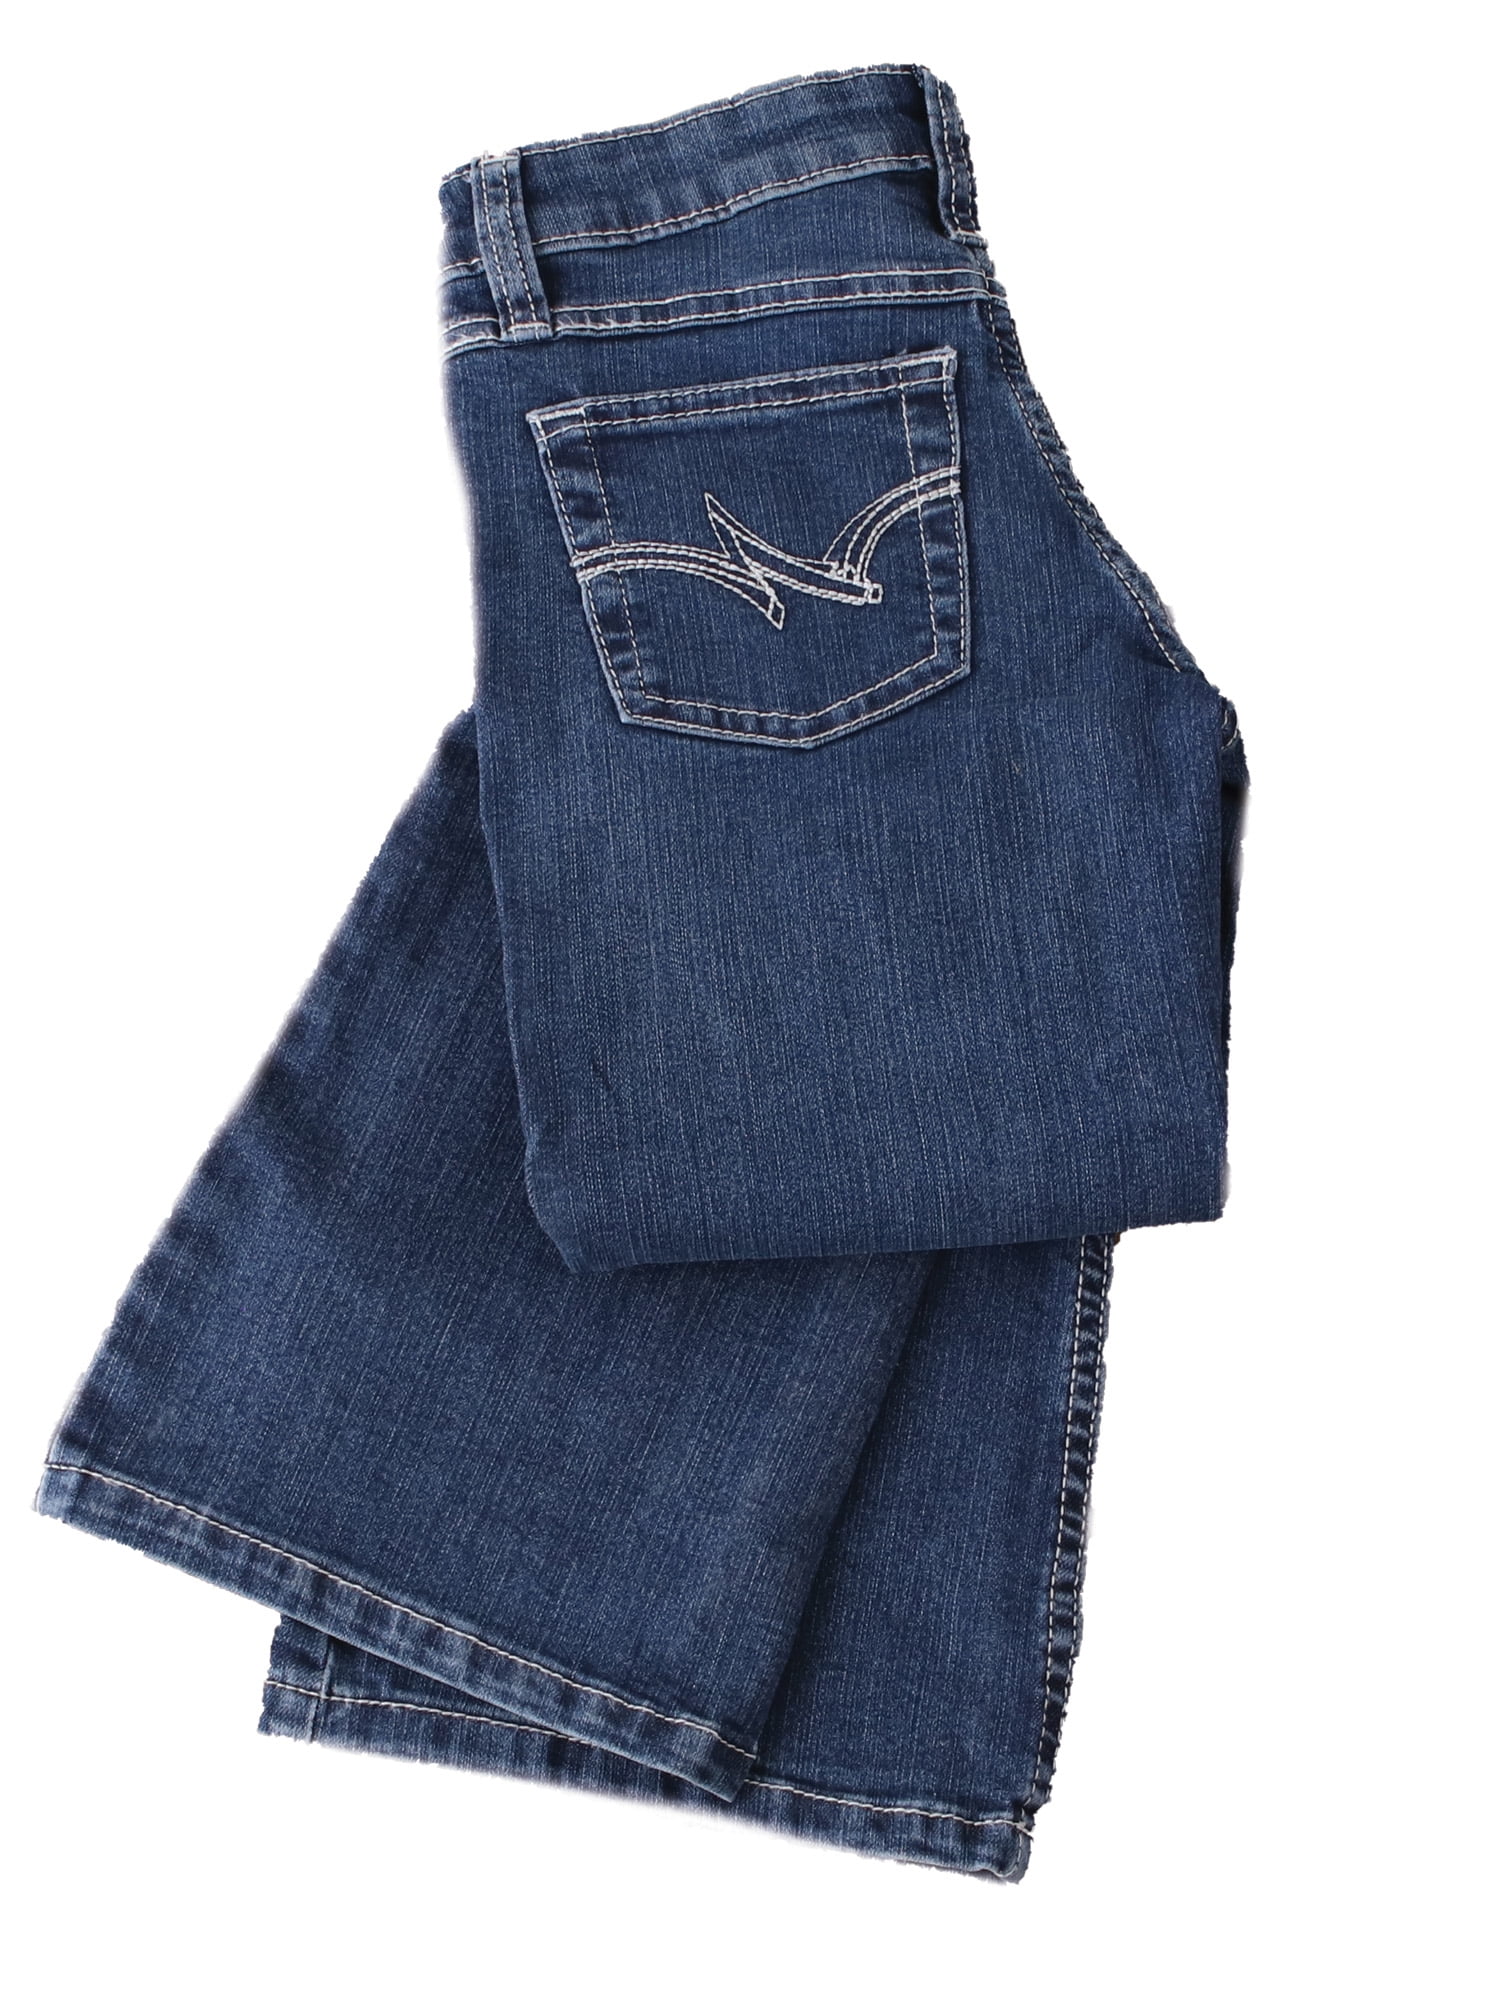 Wrangler Girls' Go- To Dark Blue Jeans Size 10 